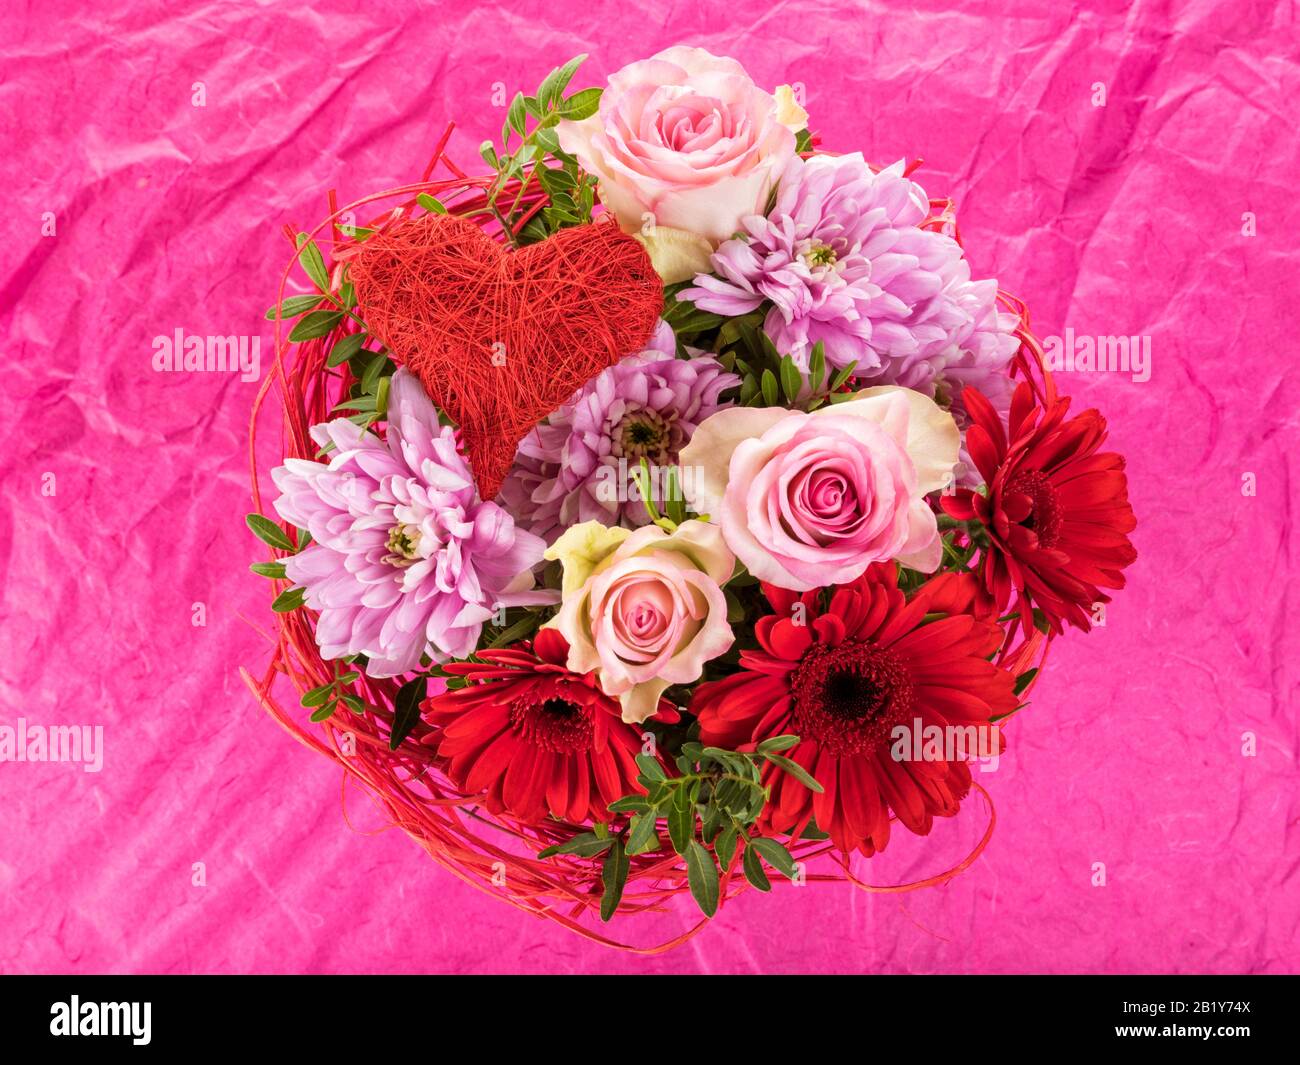 Roter und rosafarbener Blumenstrauß mit Rosen, gerberblüten, Dahlien und herzförmigem Schmuck auf rosa Hintergrund Stockfoto